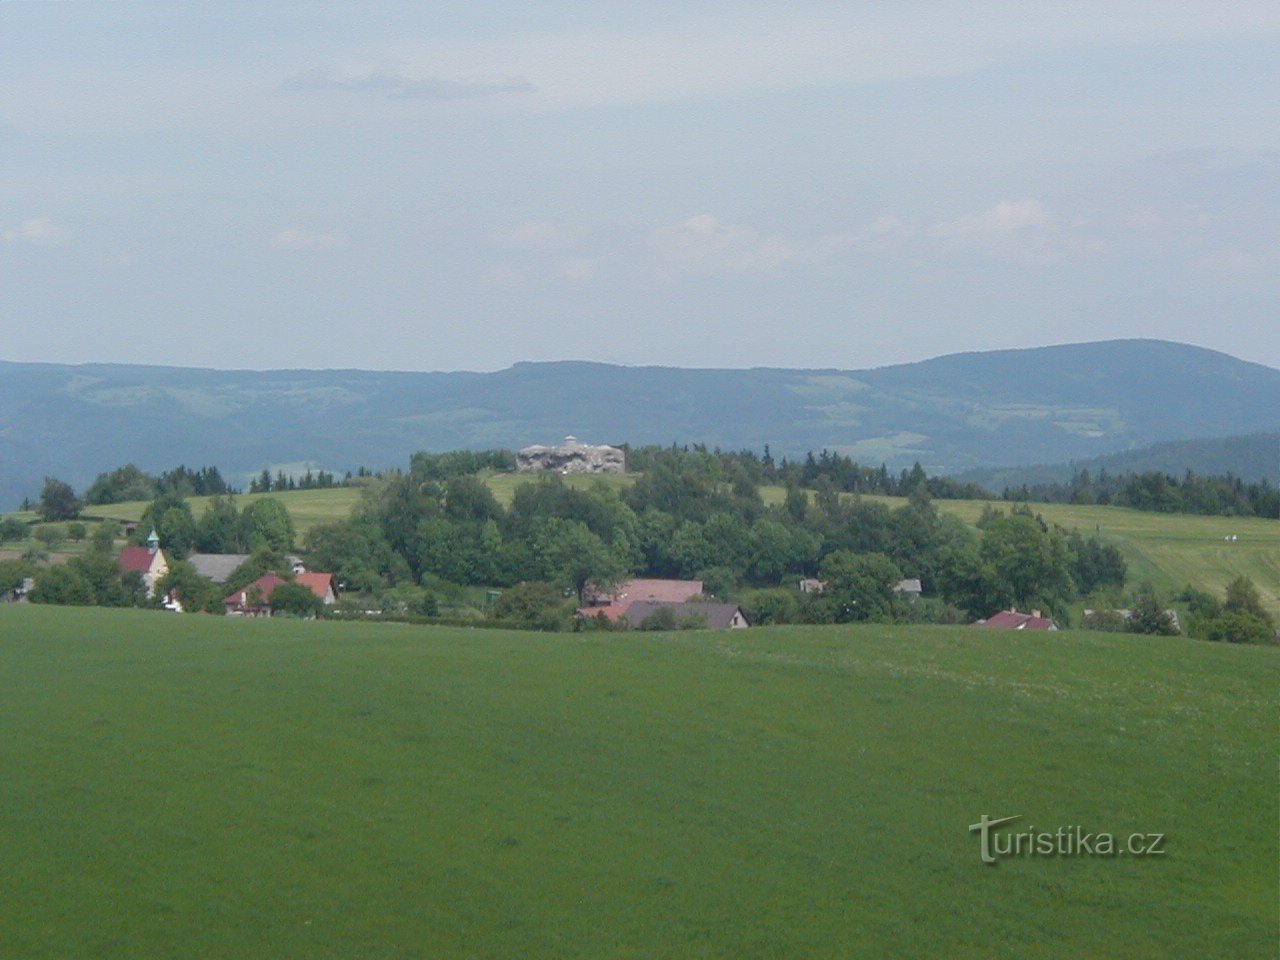 Utsiktstorn på Dobrošov - utsikt mot fästningen Můstek